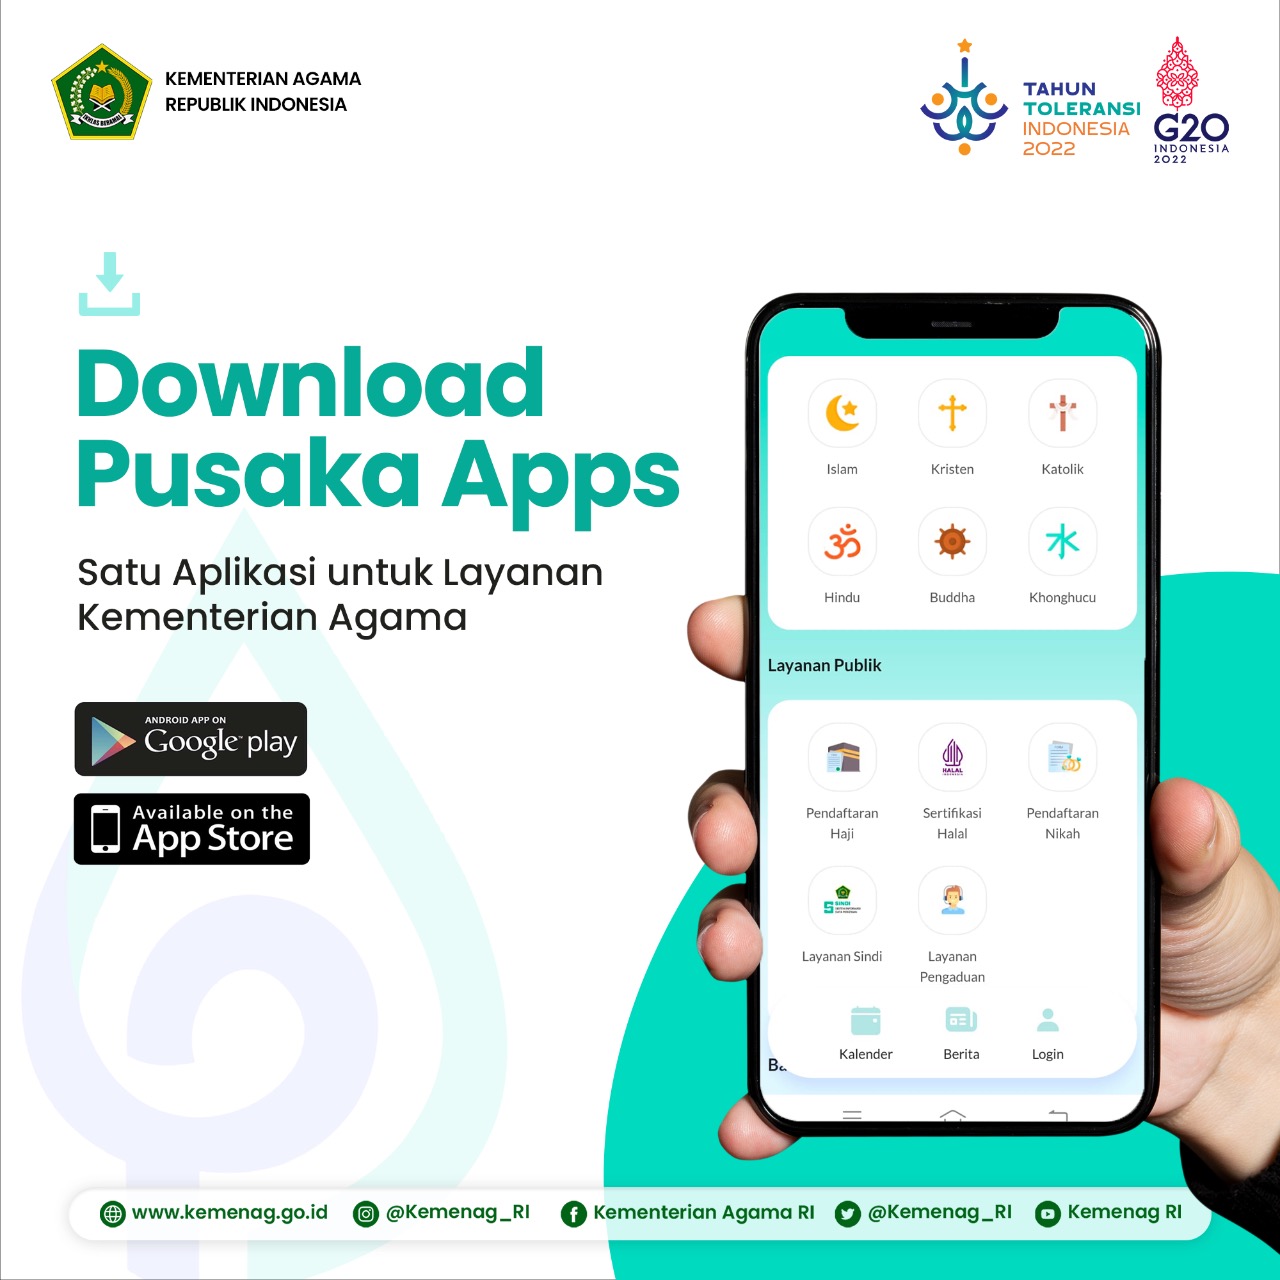 Download aplikasi Pusaka